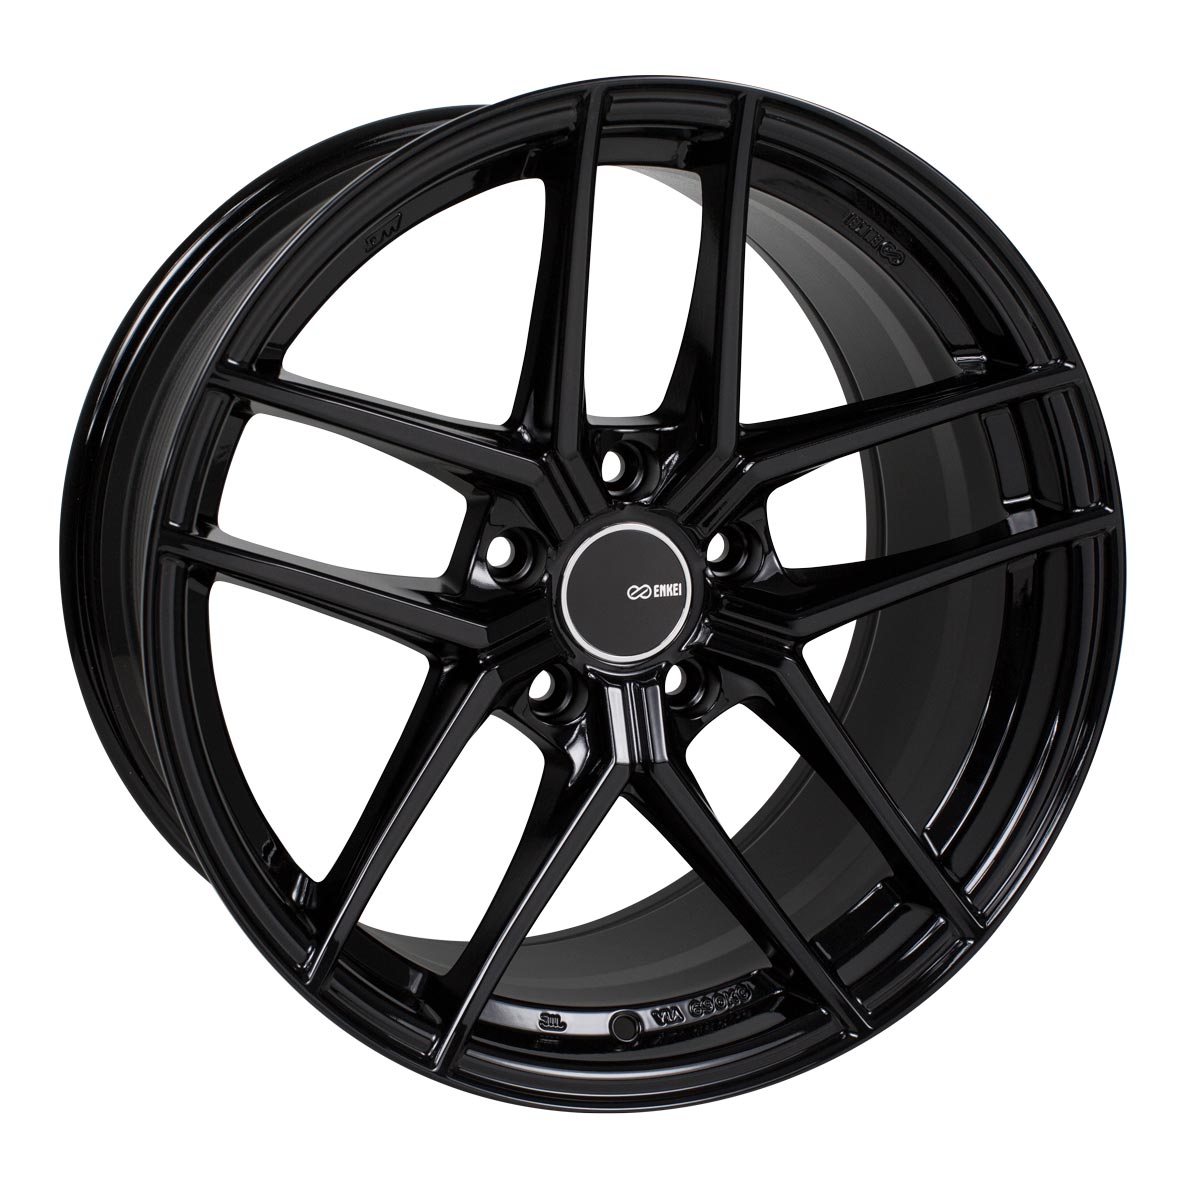 Enkei TY-5 Wheel Gloss Black 18x9.5 +45 5x100 498-895-8045BK